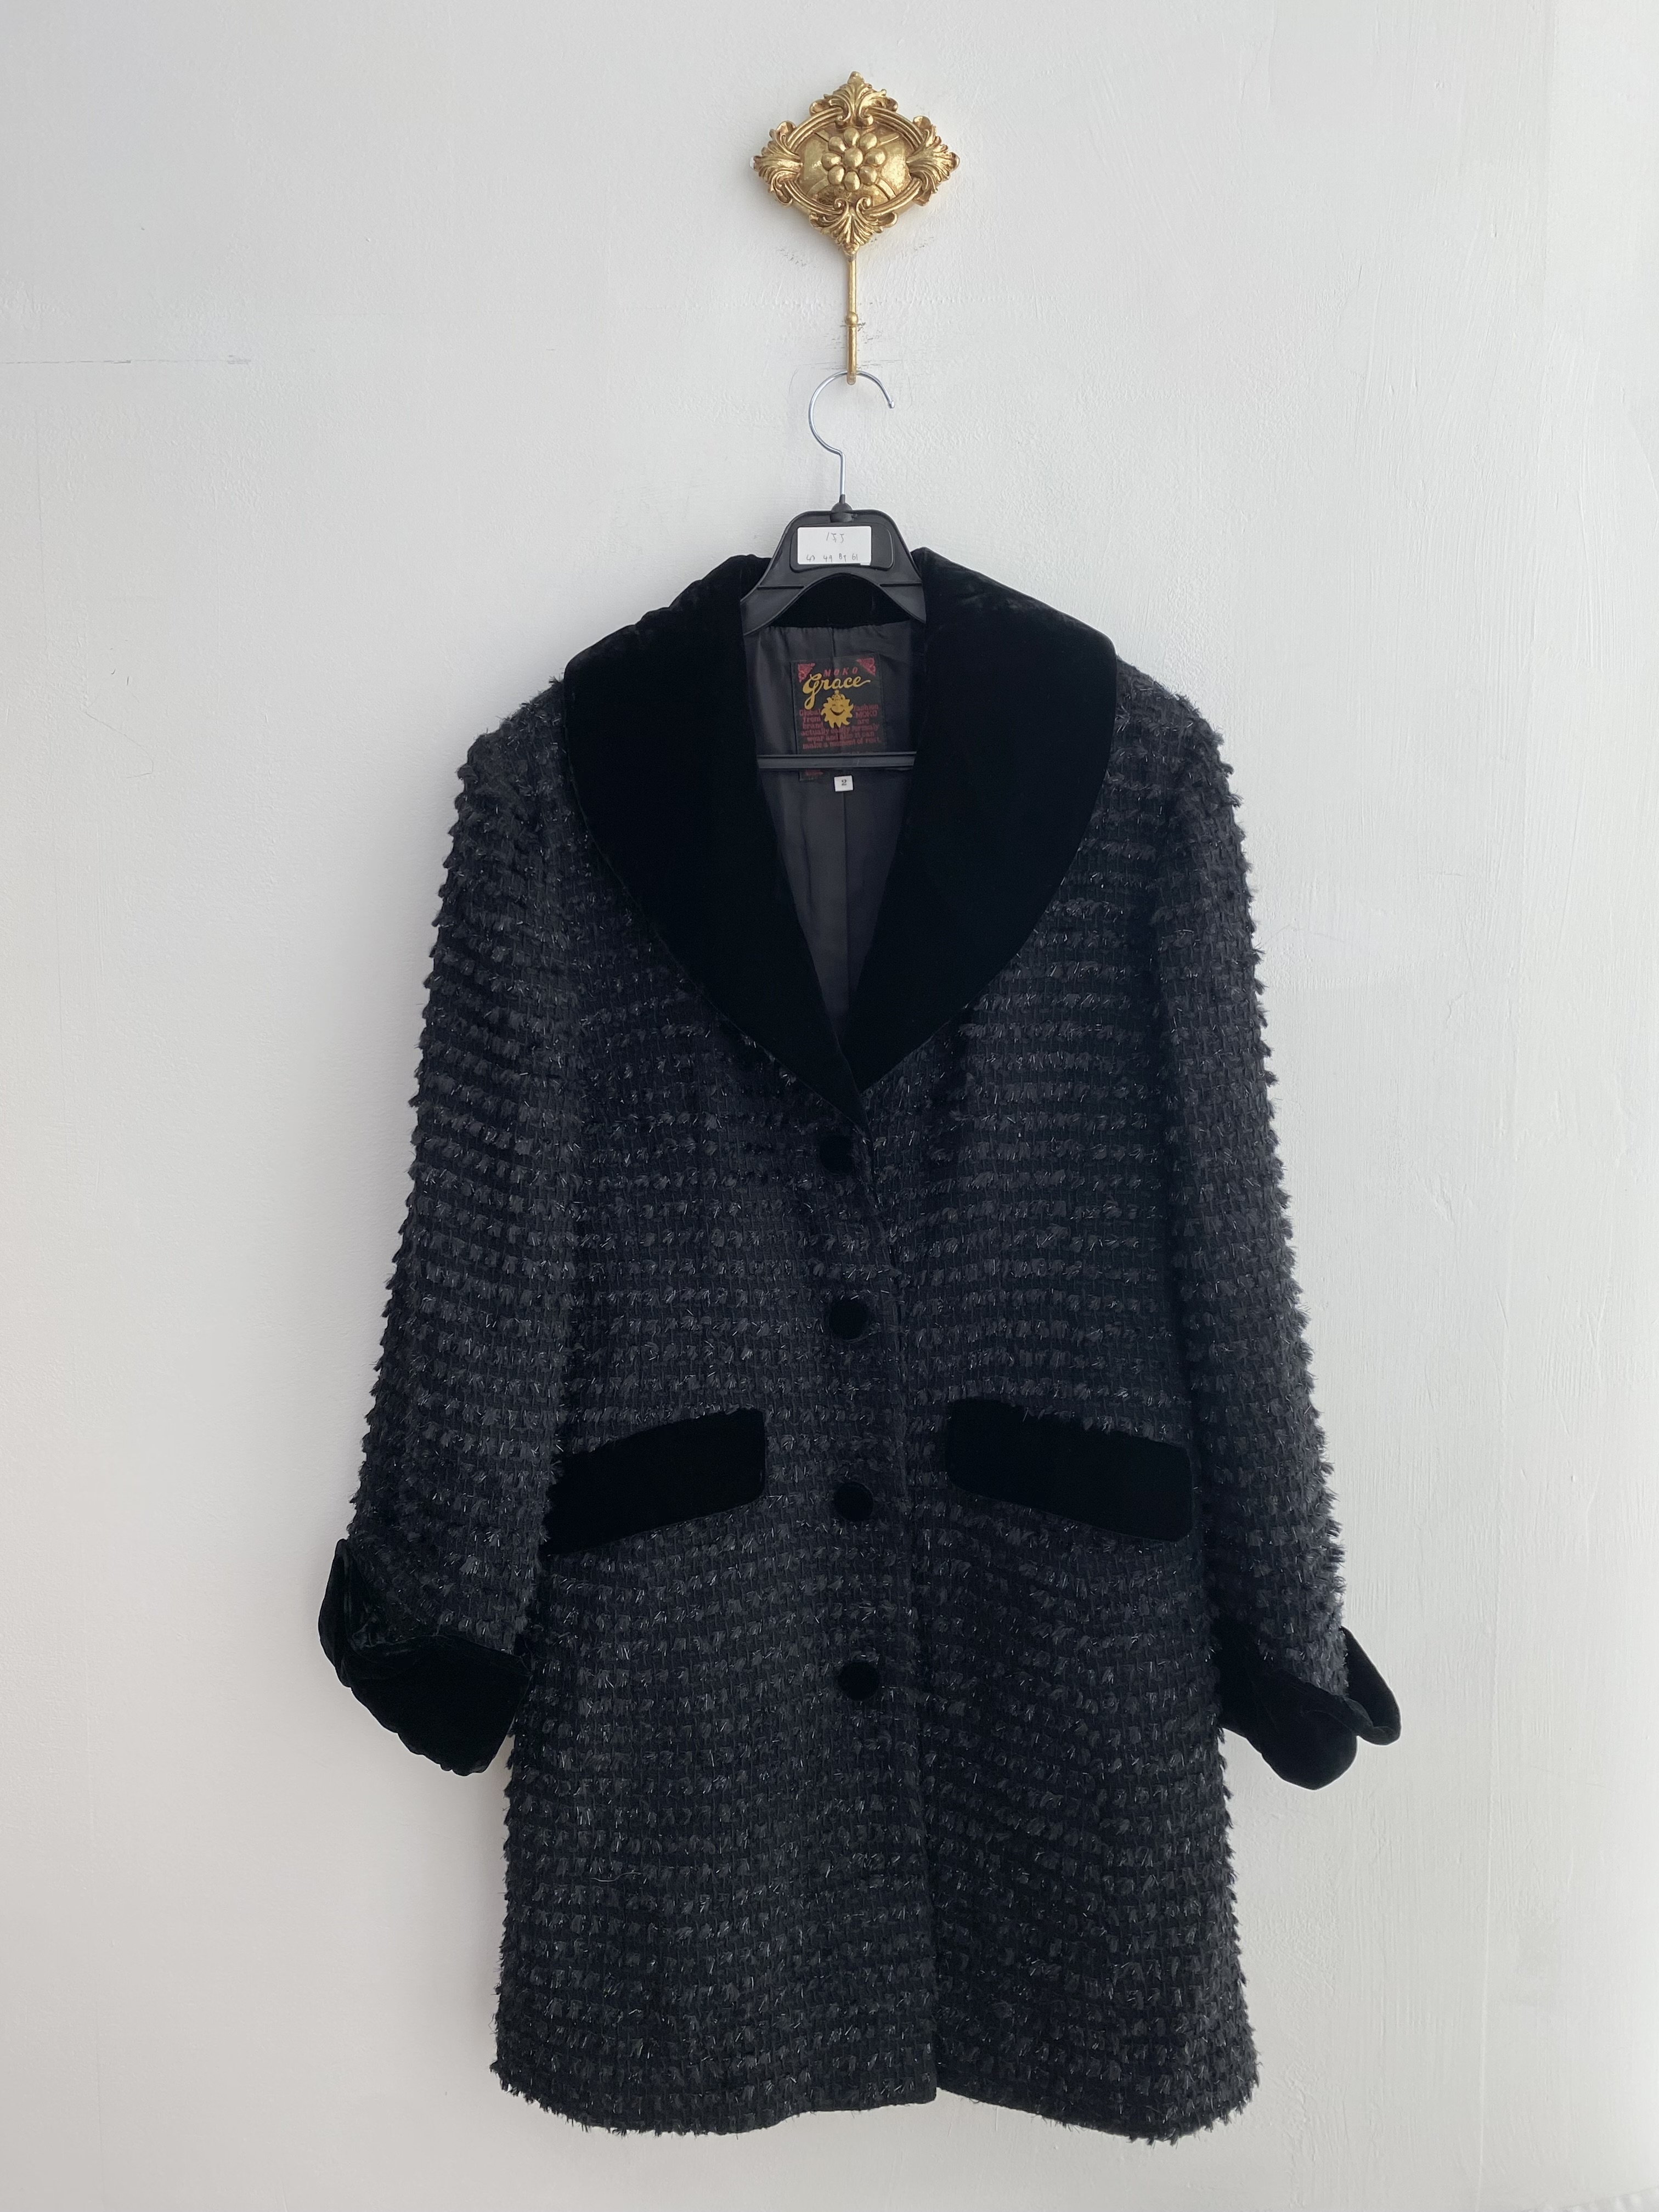 Black glittery pattern velvet point boxy long jacket